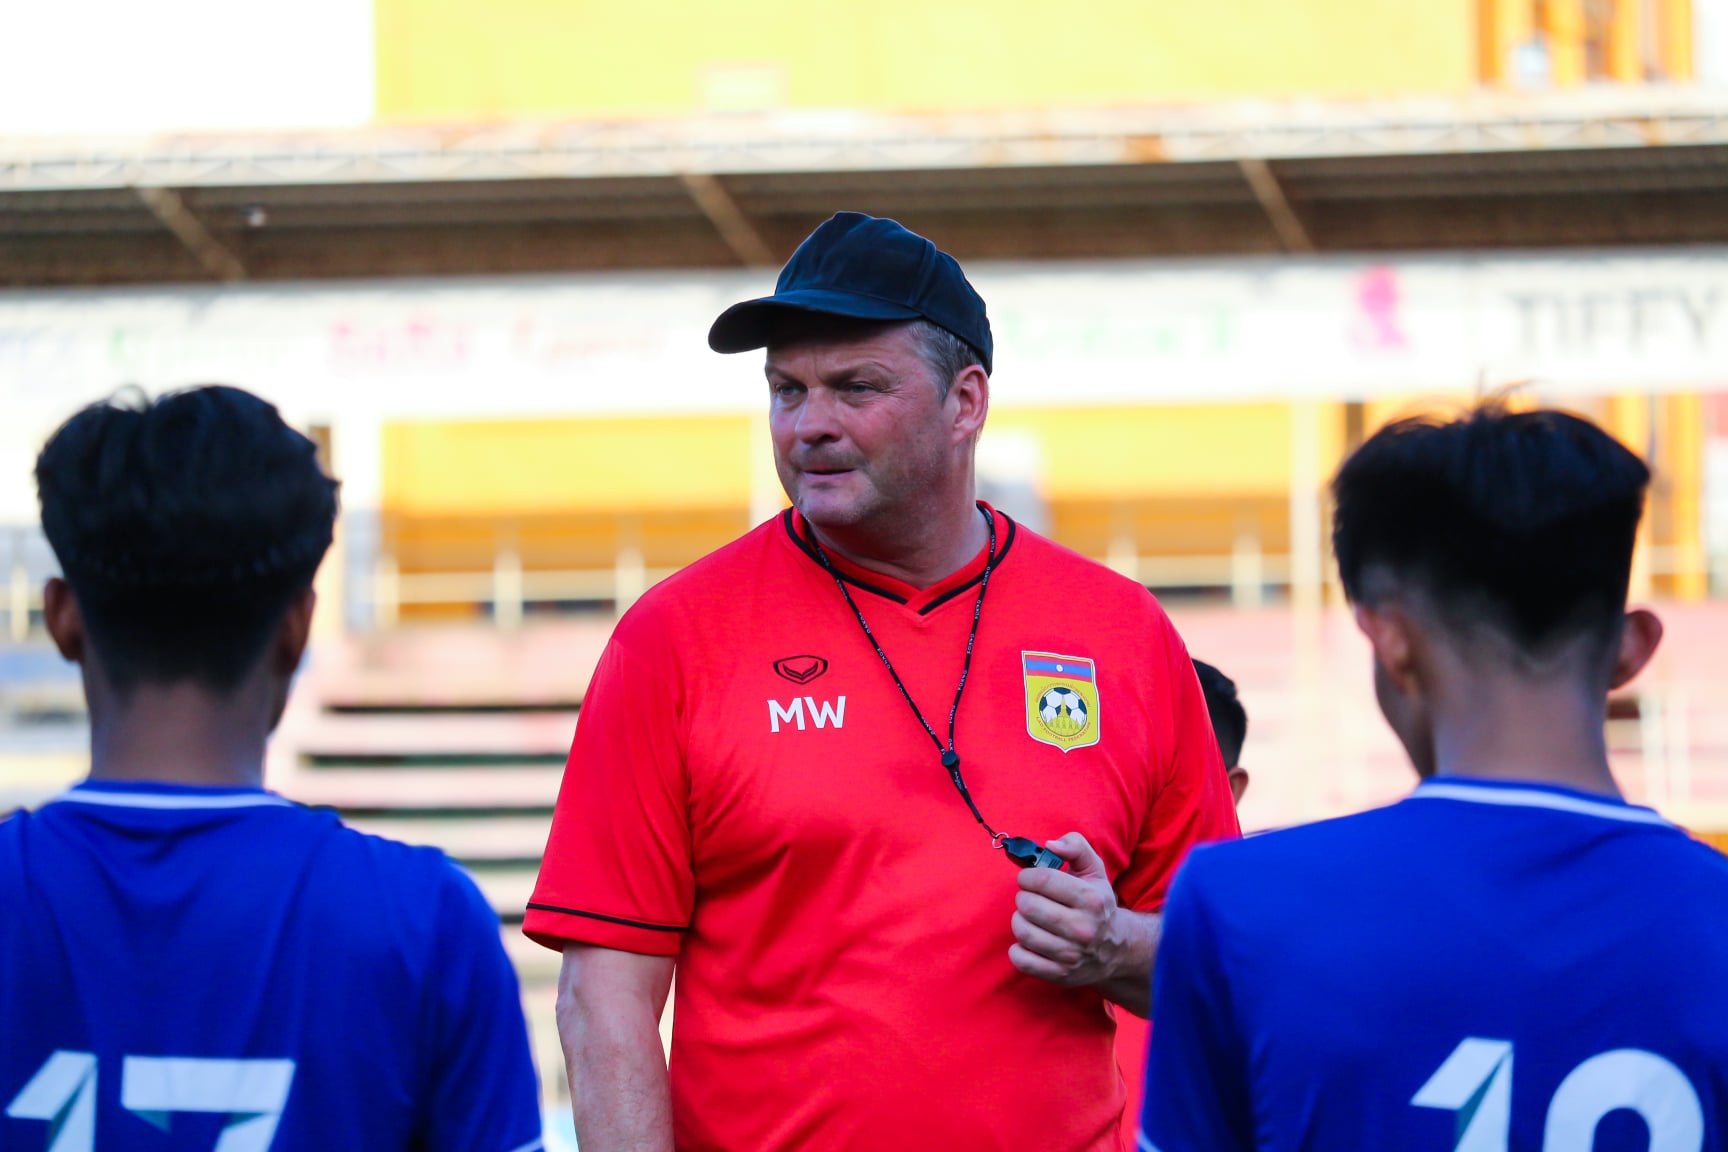 HLV U23 Lào muốn bắt kịp trình độ bóng đá Việt Nam và Thái Lan - Ảnh 1